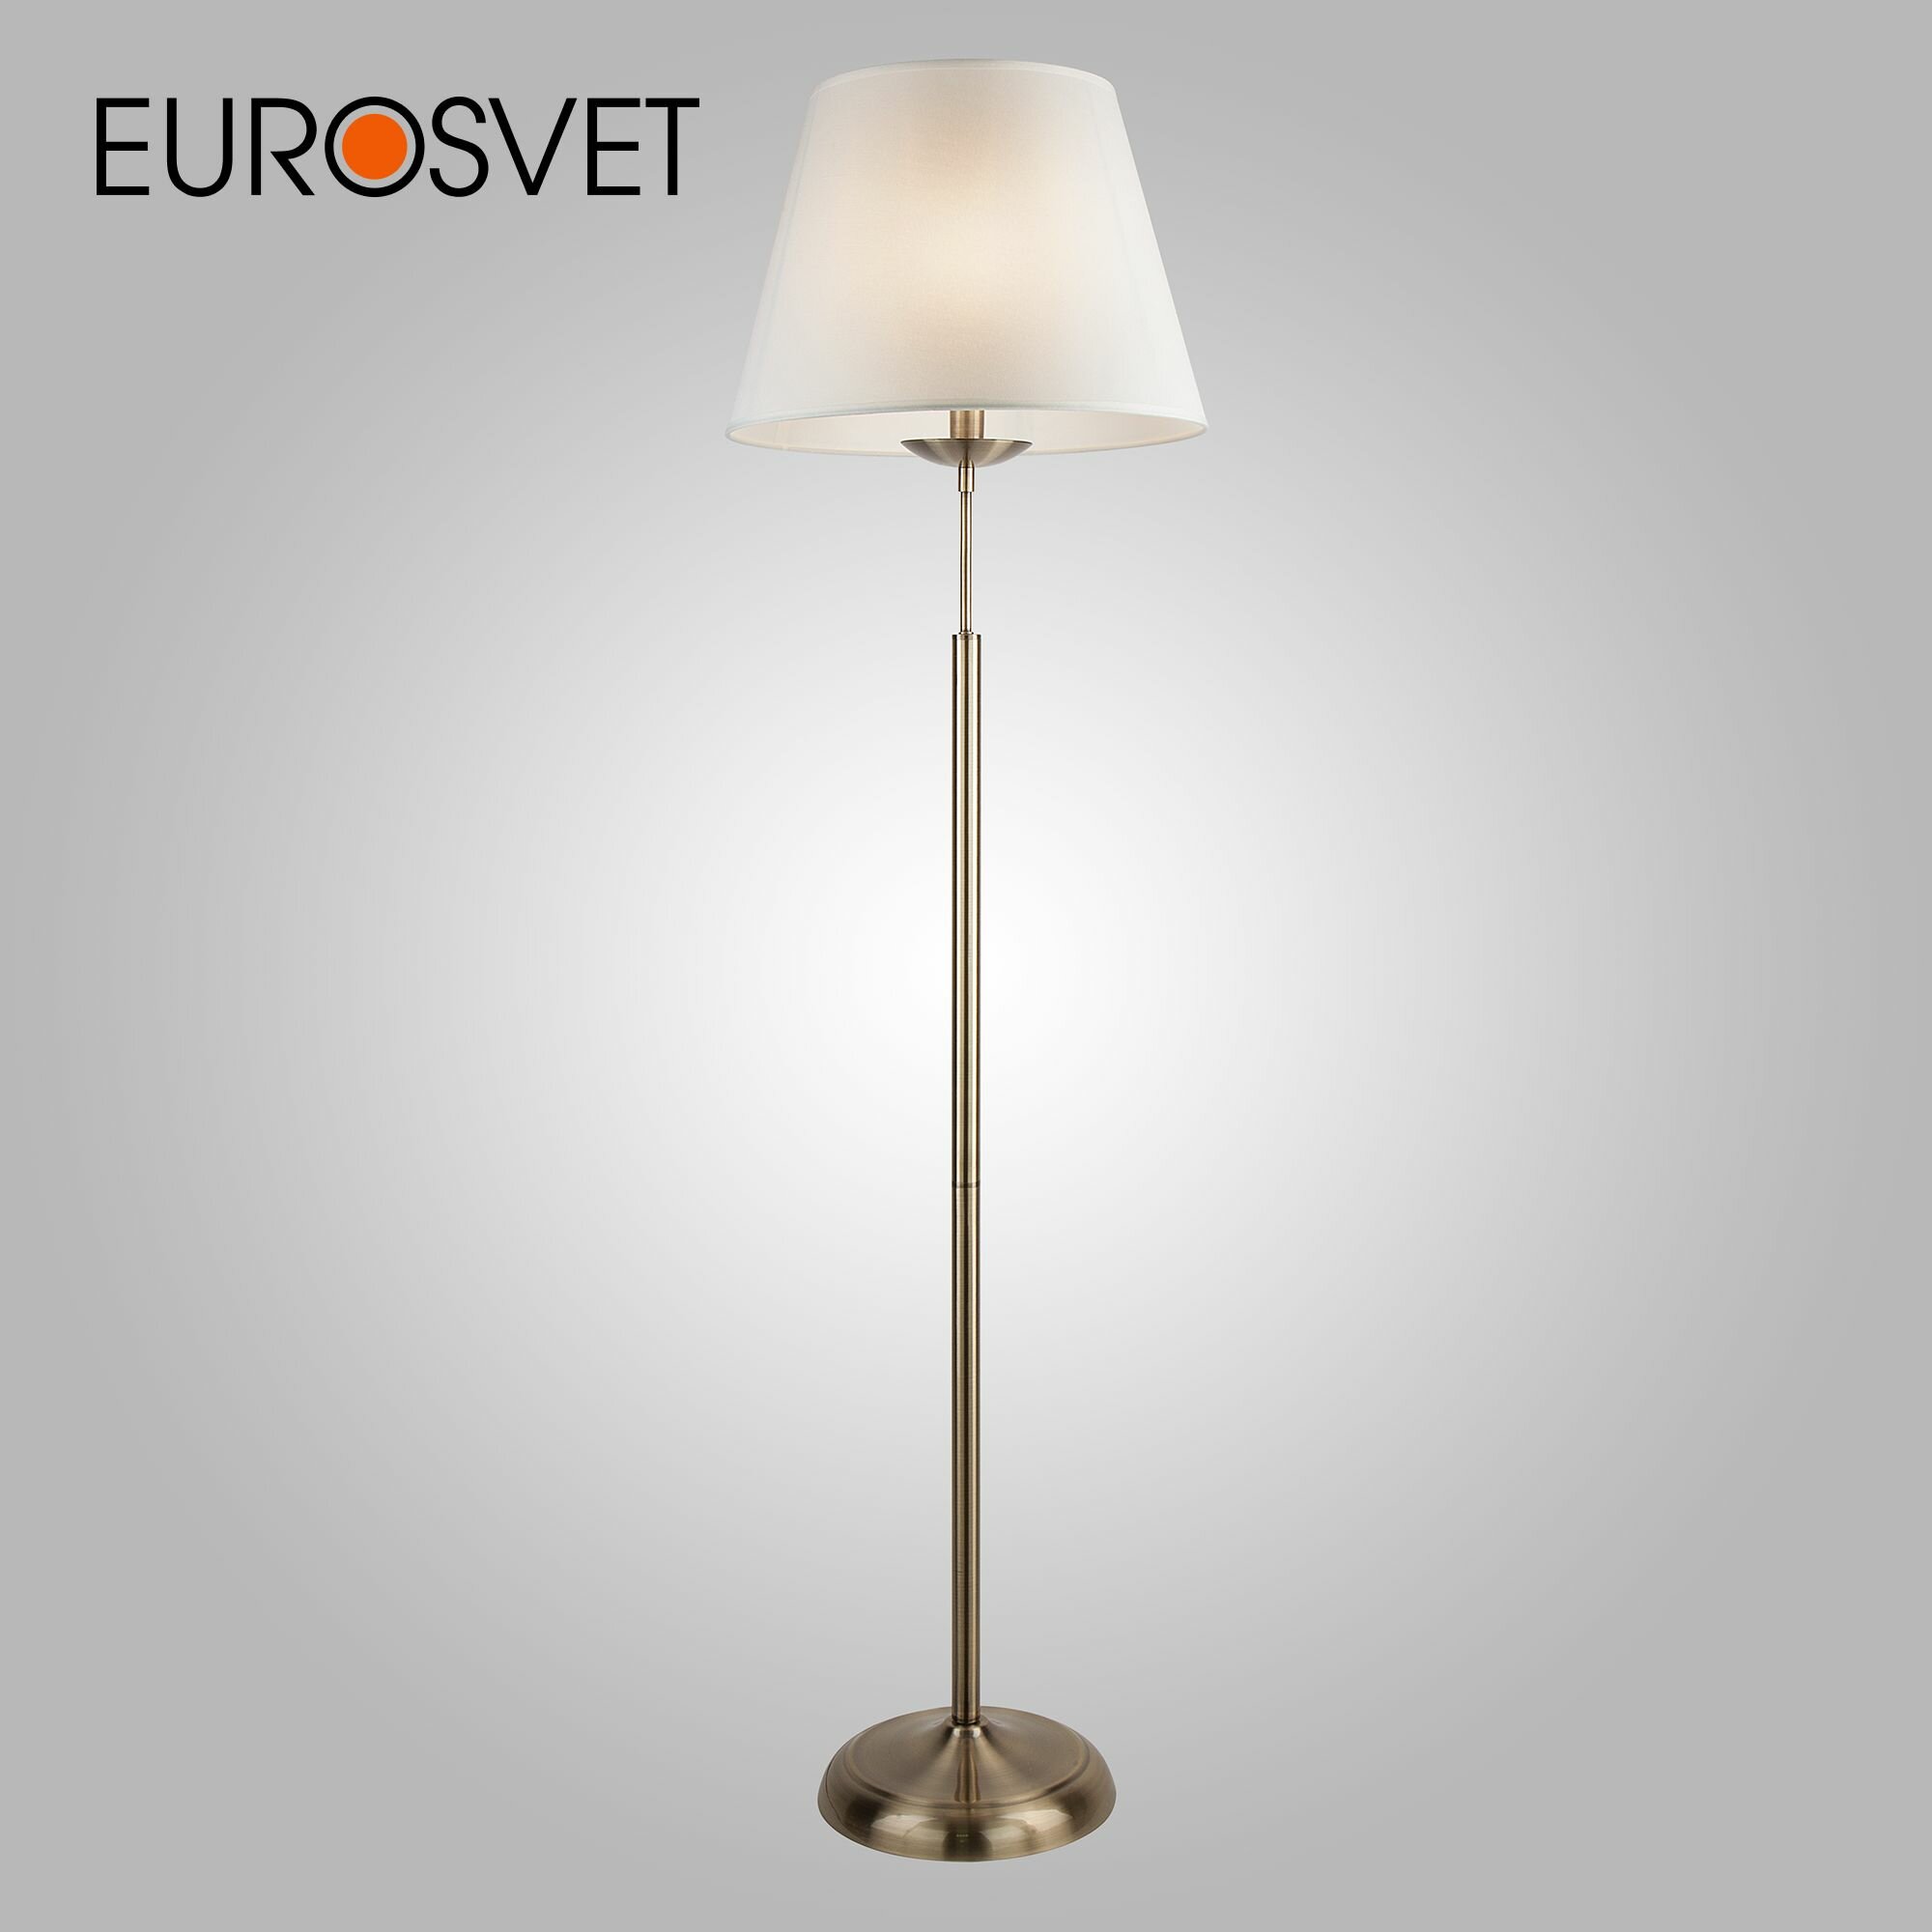 Торшер / Напольный светильник Eurosvet с абажуром античная бронза 01008/1 античная бронза